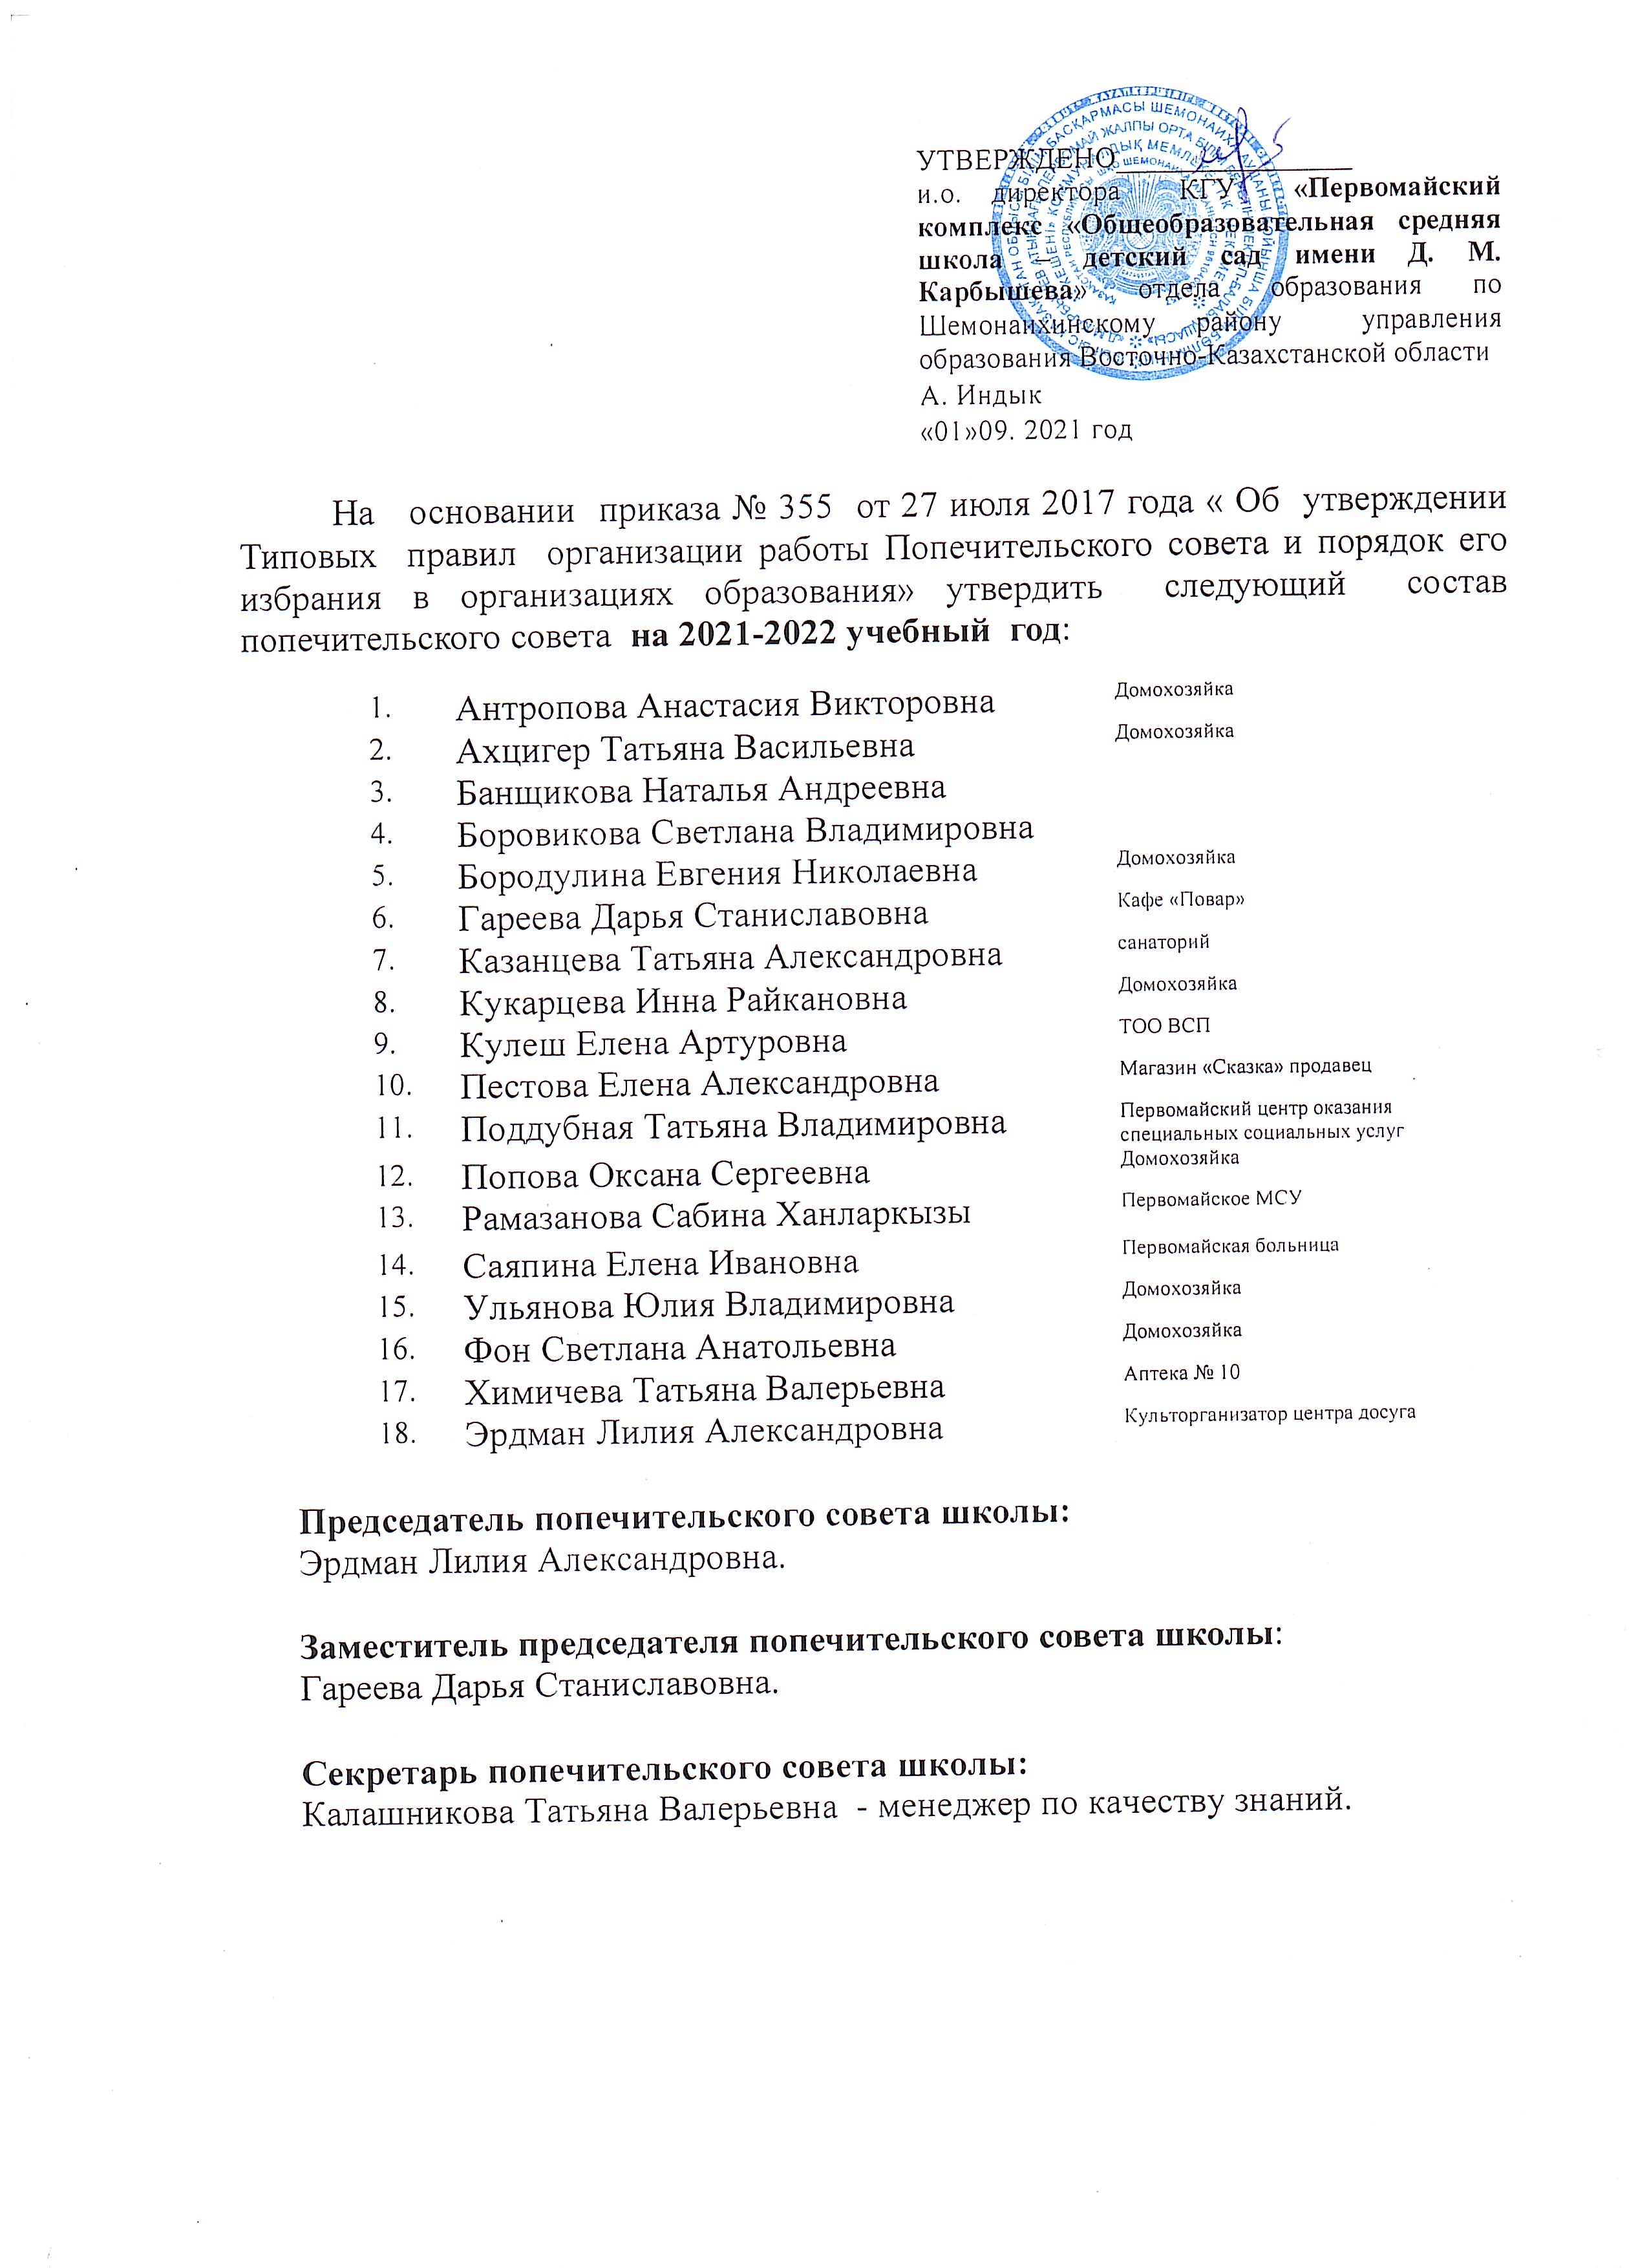 Список членов попечительского совета